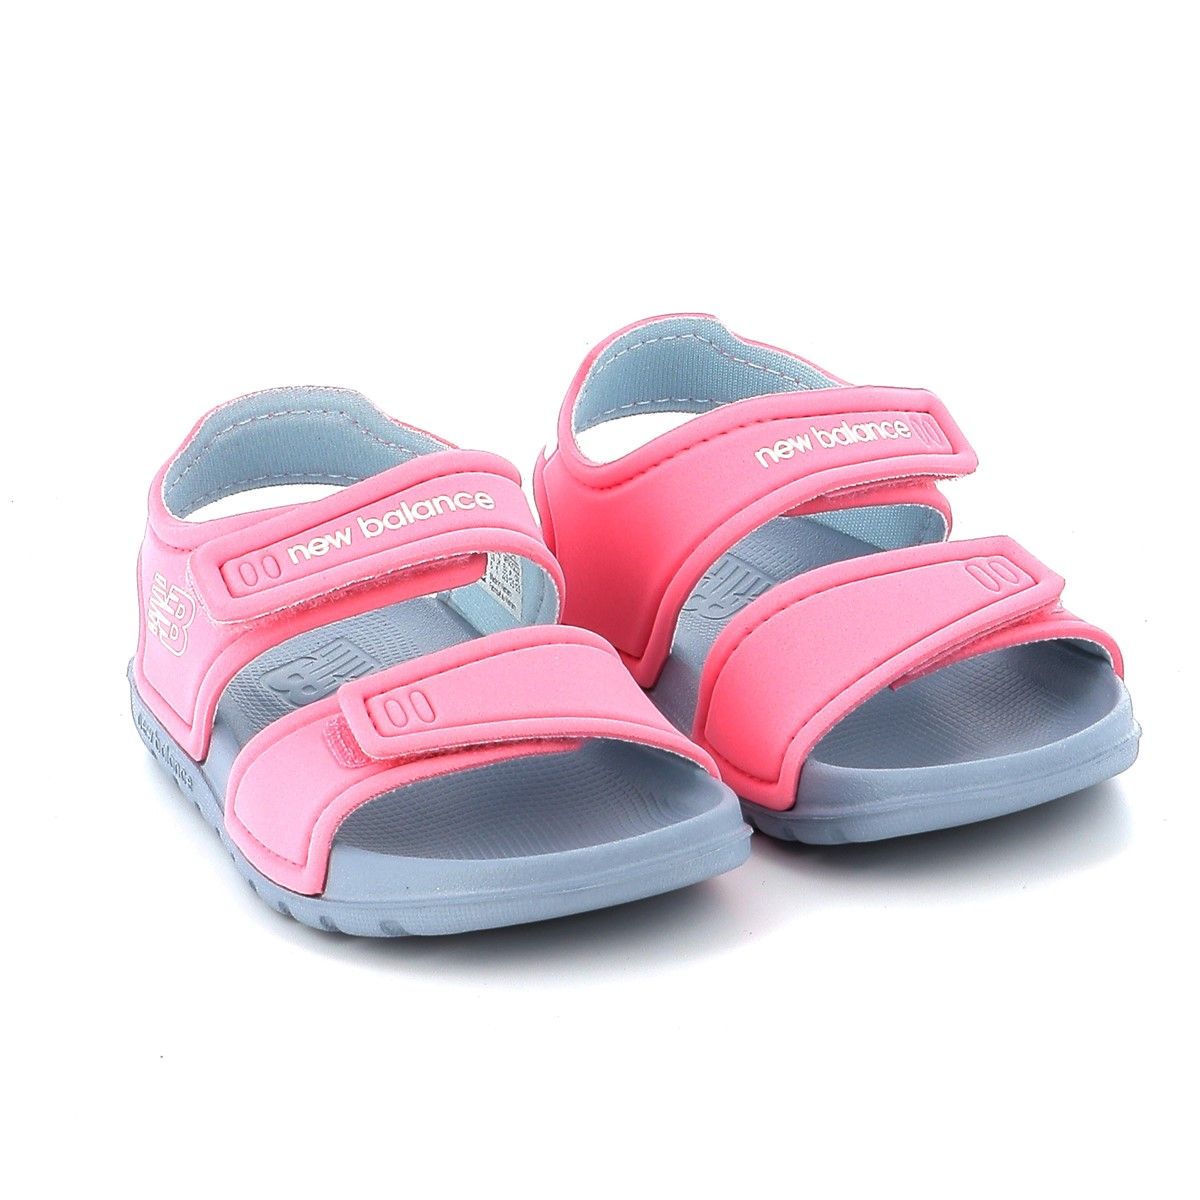 Παιδικό Πέδιλο Θαλάσσης για Κορίτσι New Balance Sandals Χρώματος Ροζ IOSPSDBC